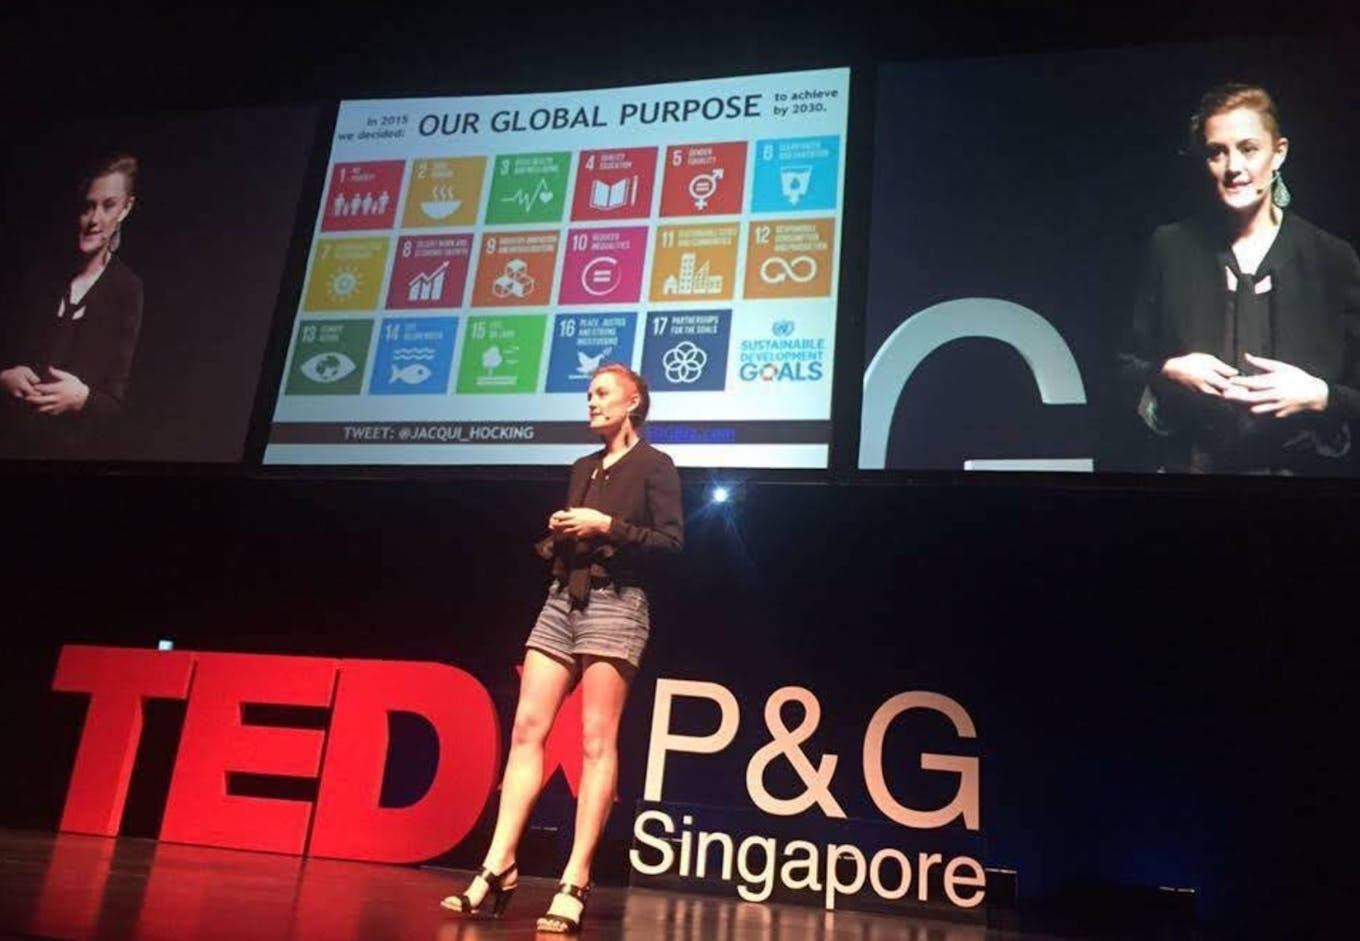 Jacqui Hocking speaking at TedX